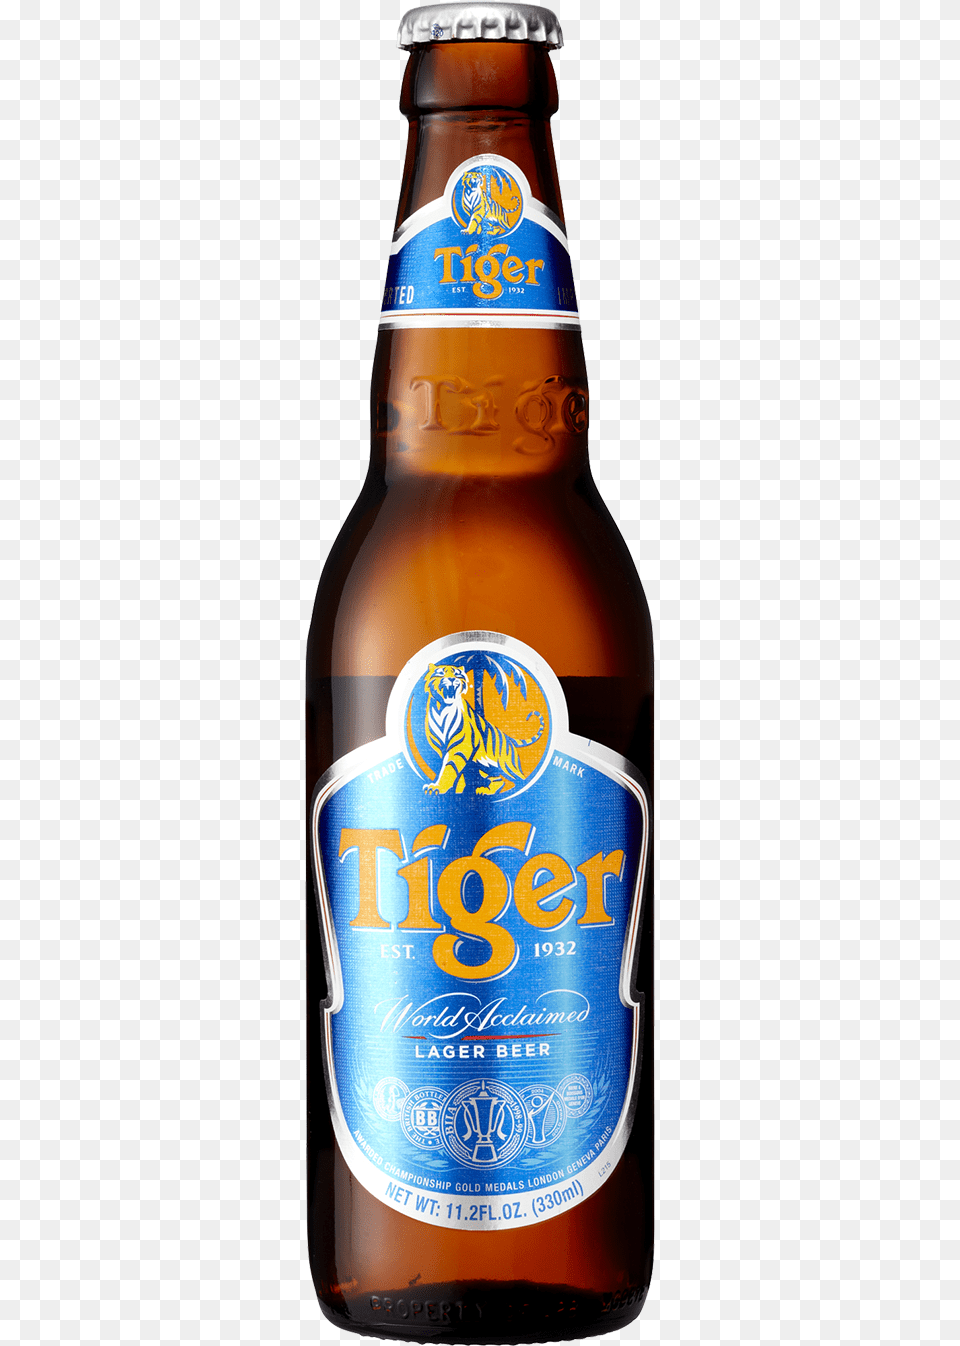 Tiger Beer Bottle Download Tiger Beer Bottle, Alcohol, Beer Bottle, Beverage, Liquor Free Png